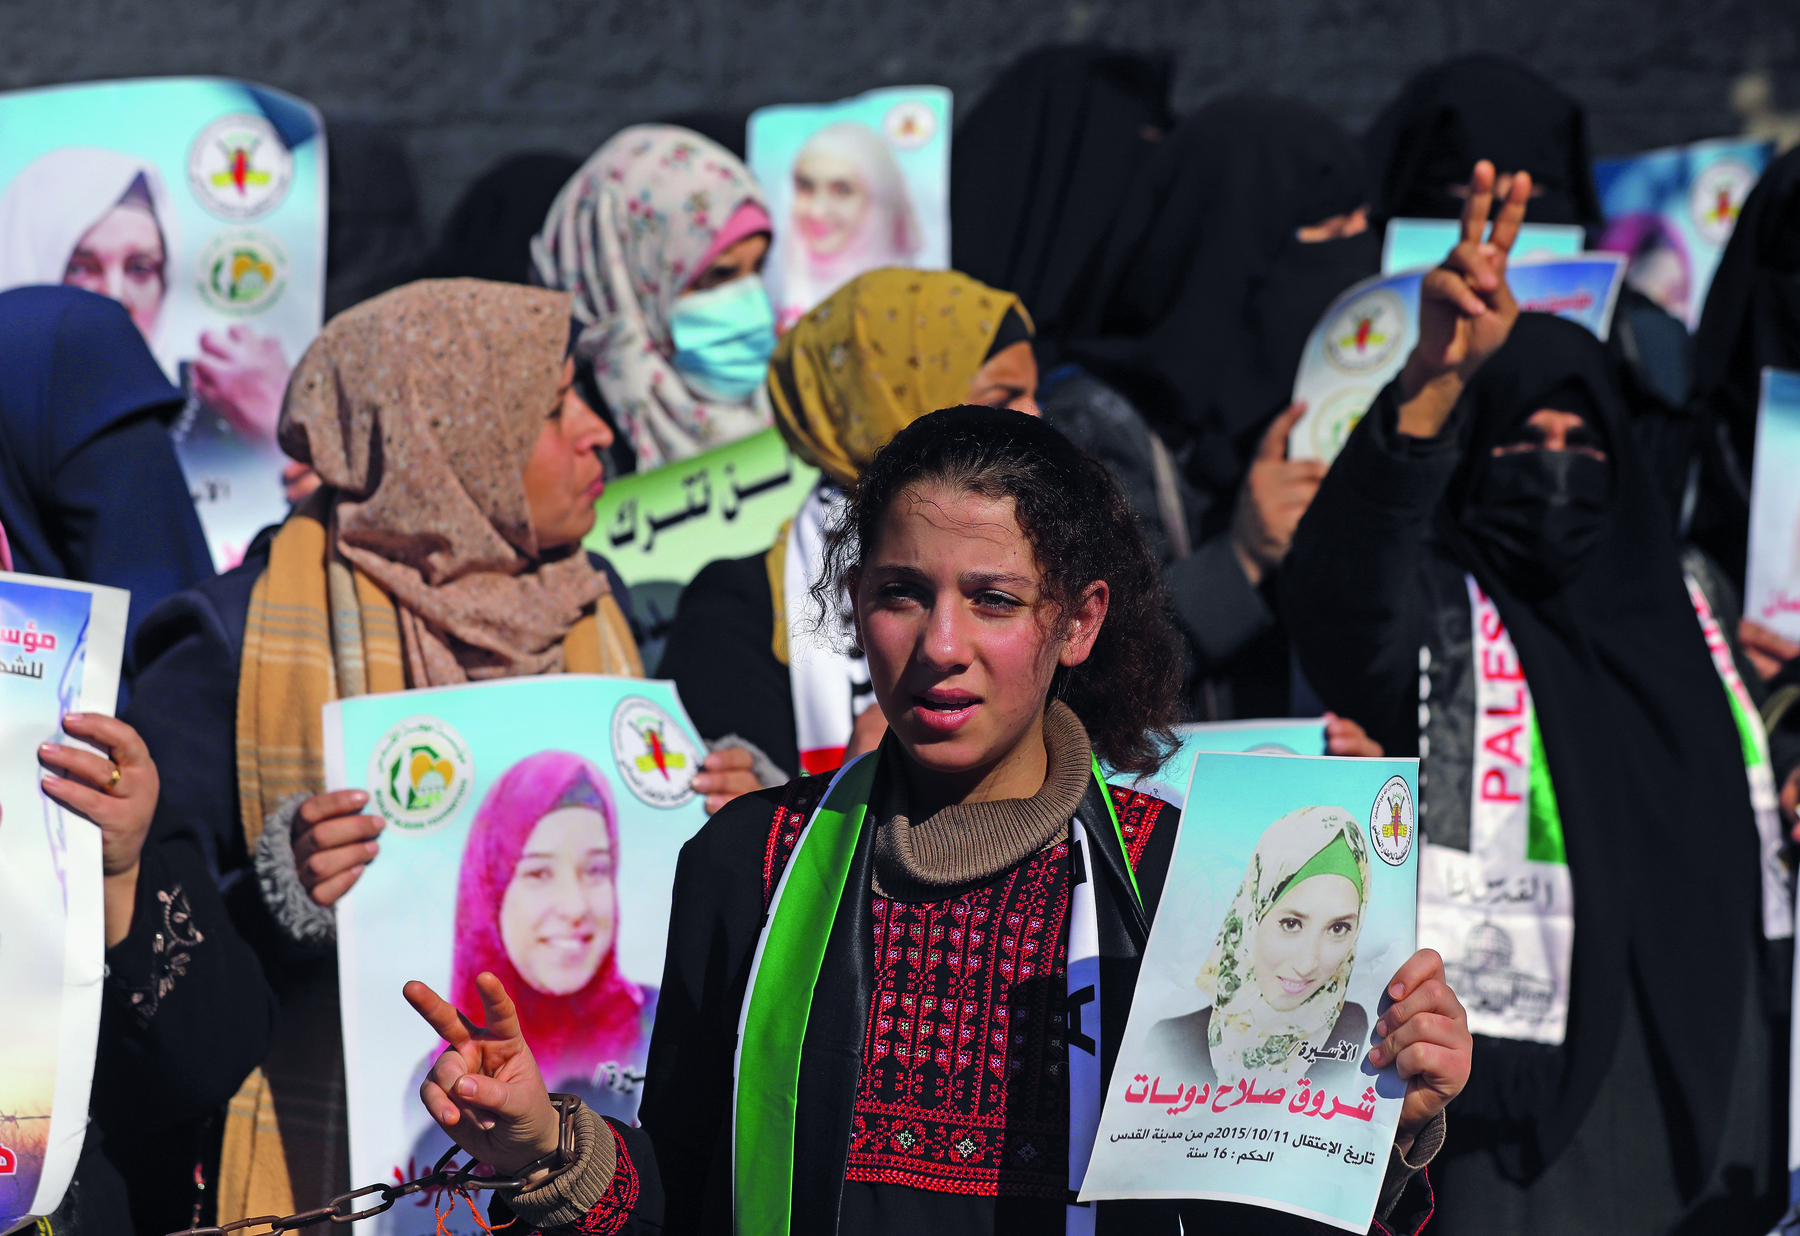 Fotografia. Um grupo de mulheres reunidas portando cartazes estampados com os rostos de outras mulheres. A maioria delas está usando vestes tradicionais que cobrem pescoço, orelhas e cabelo. Algumas cobrem também parte do rosto.